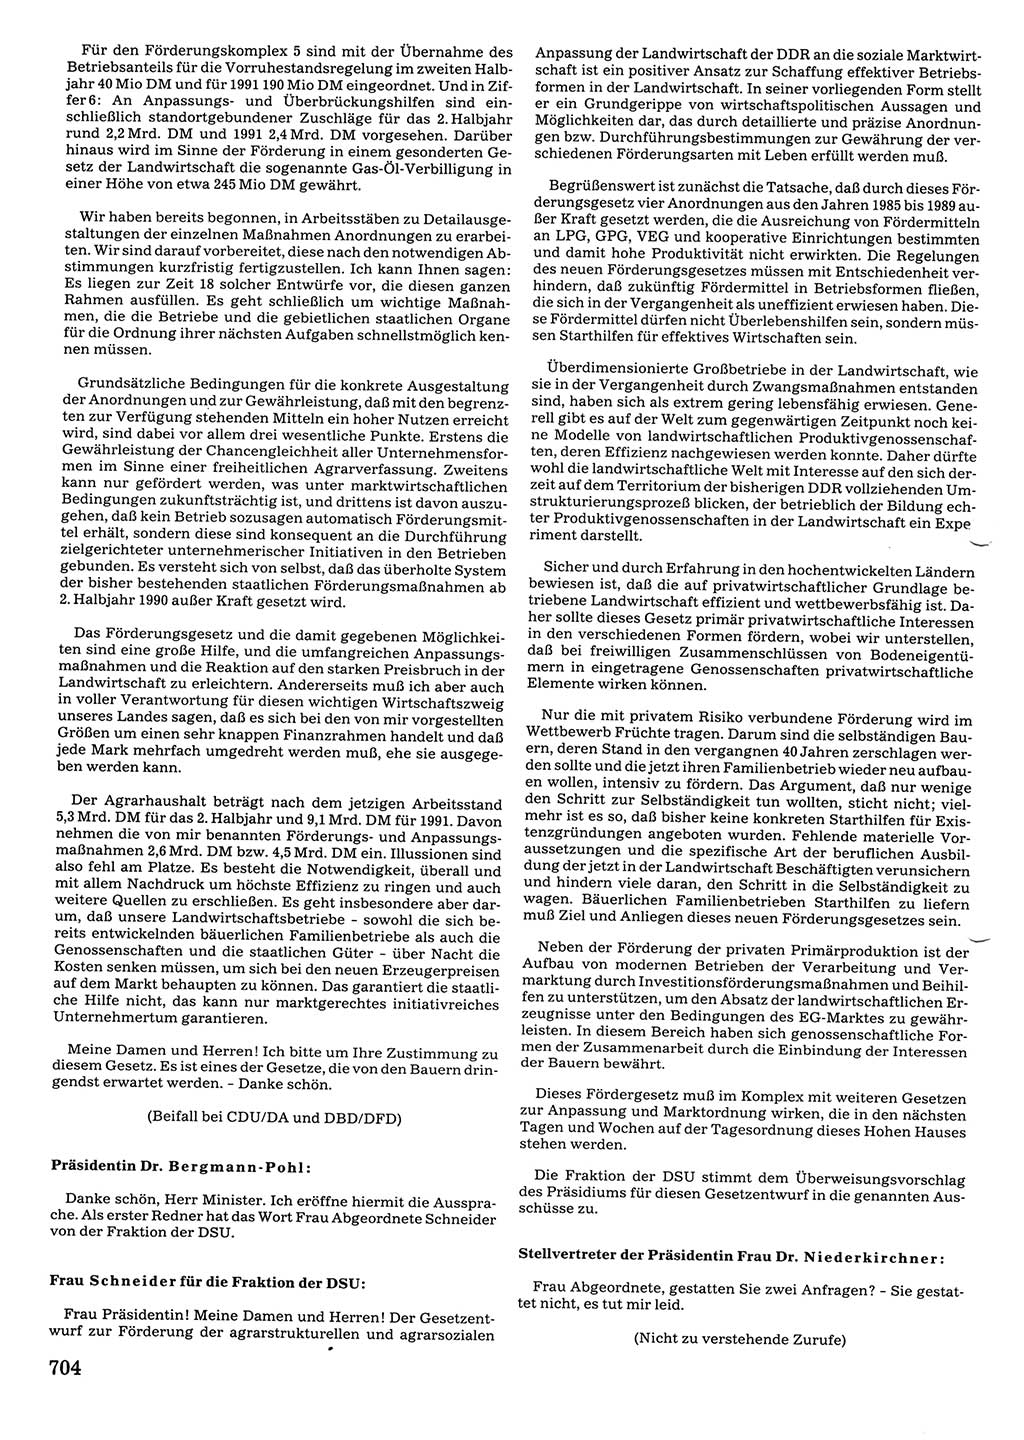 Tagungen der Volkskammer (VK) der Deutschen Demokratischen Republik (DDR), 10. Wahlperiode 1990, Seite 704 (VK. DDR 10. WP. 1990, Prot. Tg. 1-38, 5.4.-2.10.1990, S. 704)